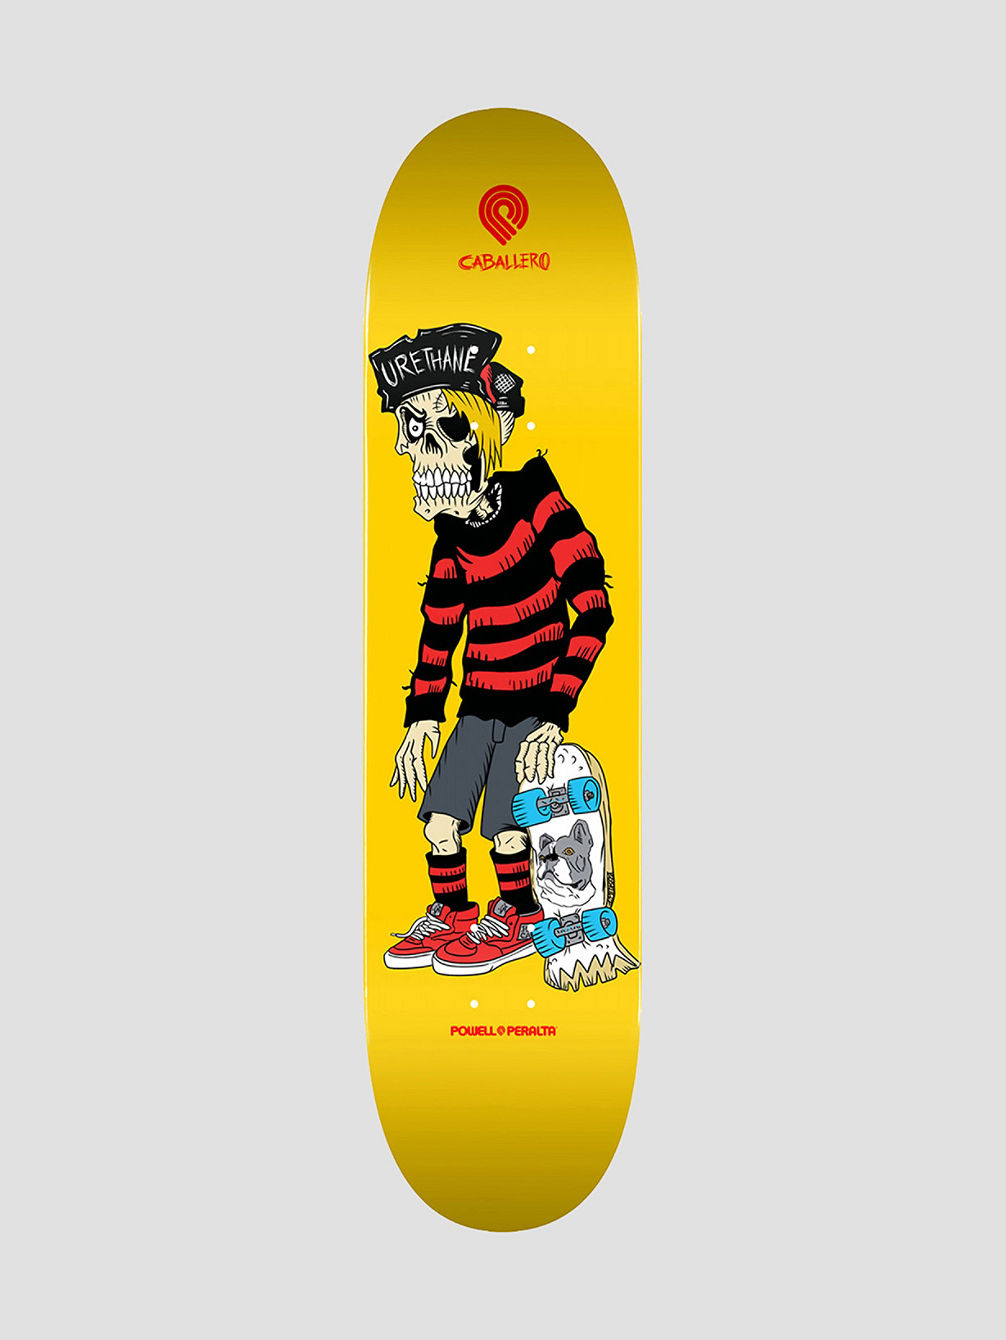 Steve Caballero Urethane Popsicle 9.0&amp;#034; Skateboard Deck